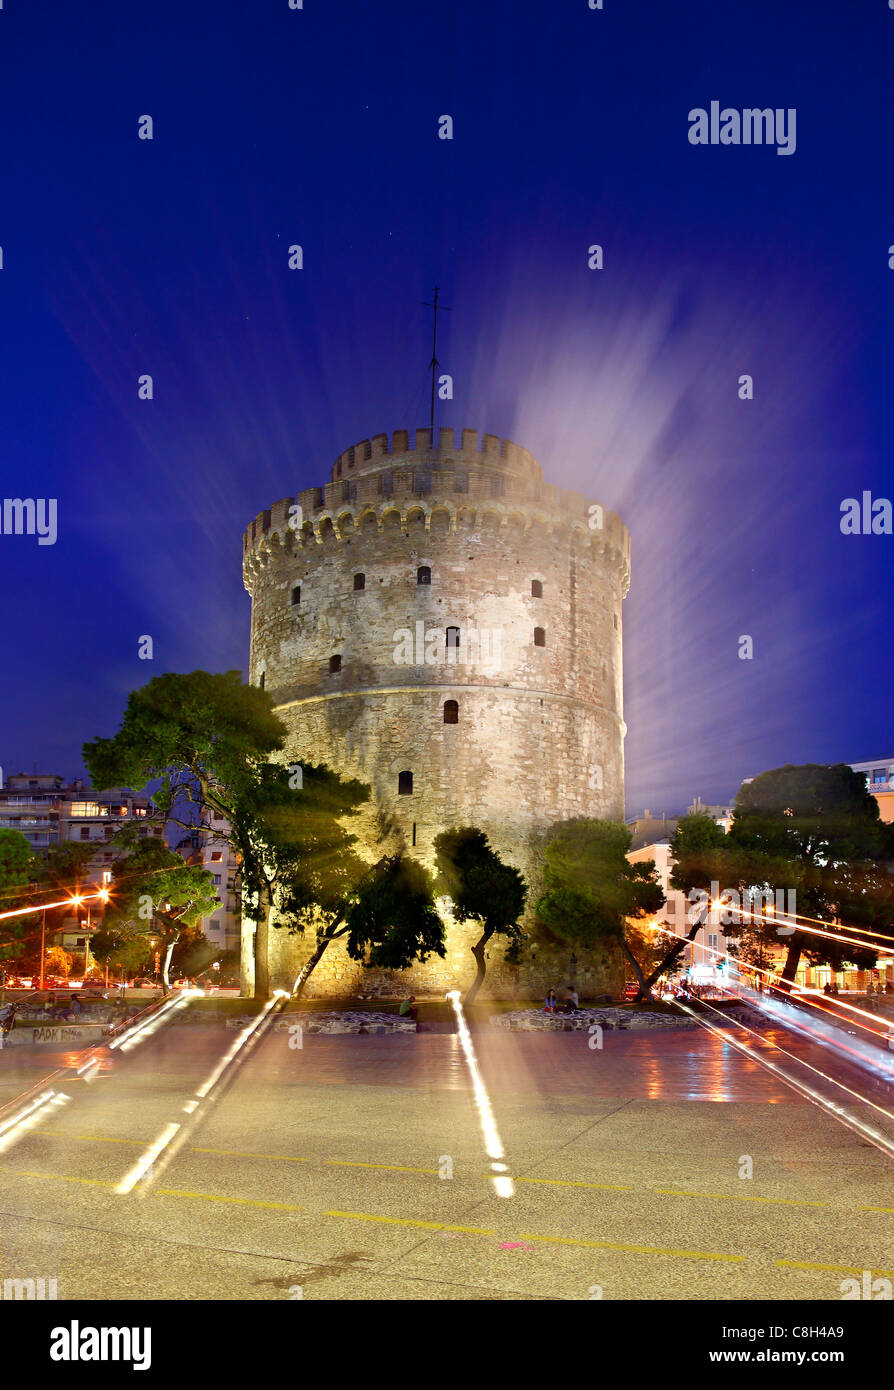 La Tour blanche, symbole de la ville de Thessalonique, de nuit ("effet de zoom avant). Macédoine Grèce Banque D'Images